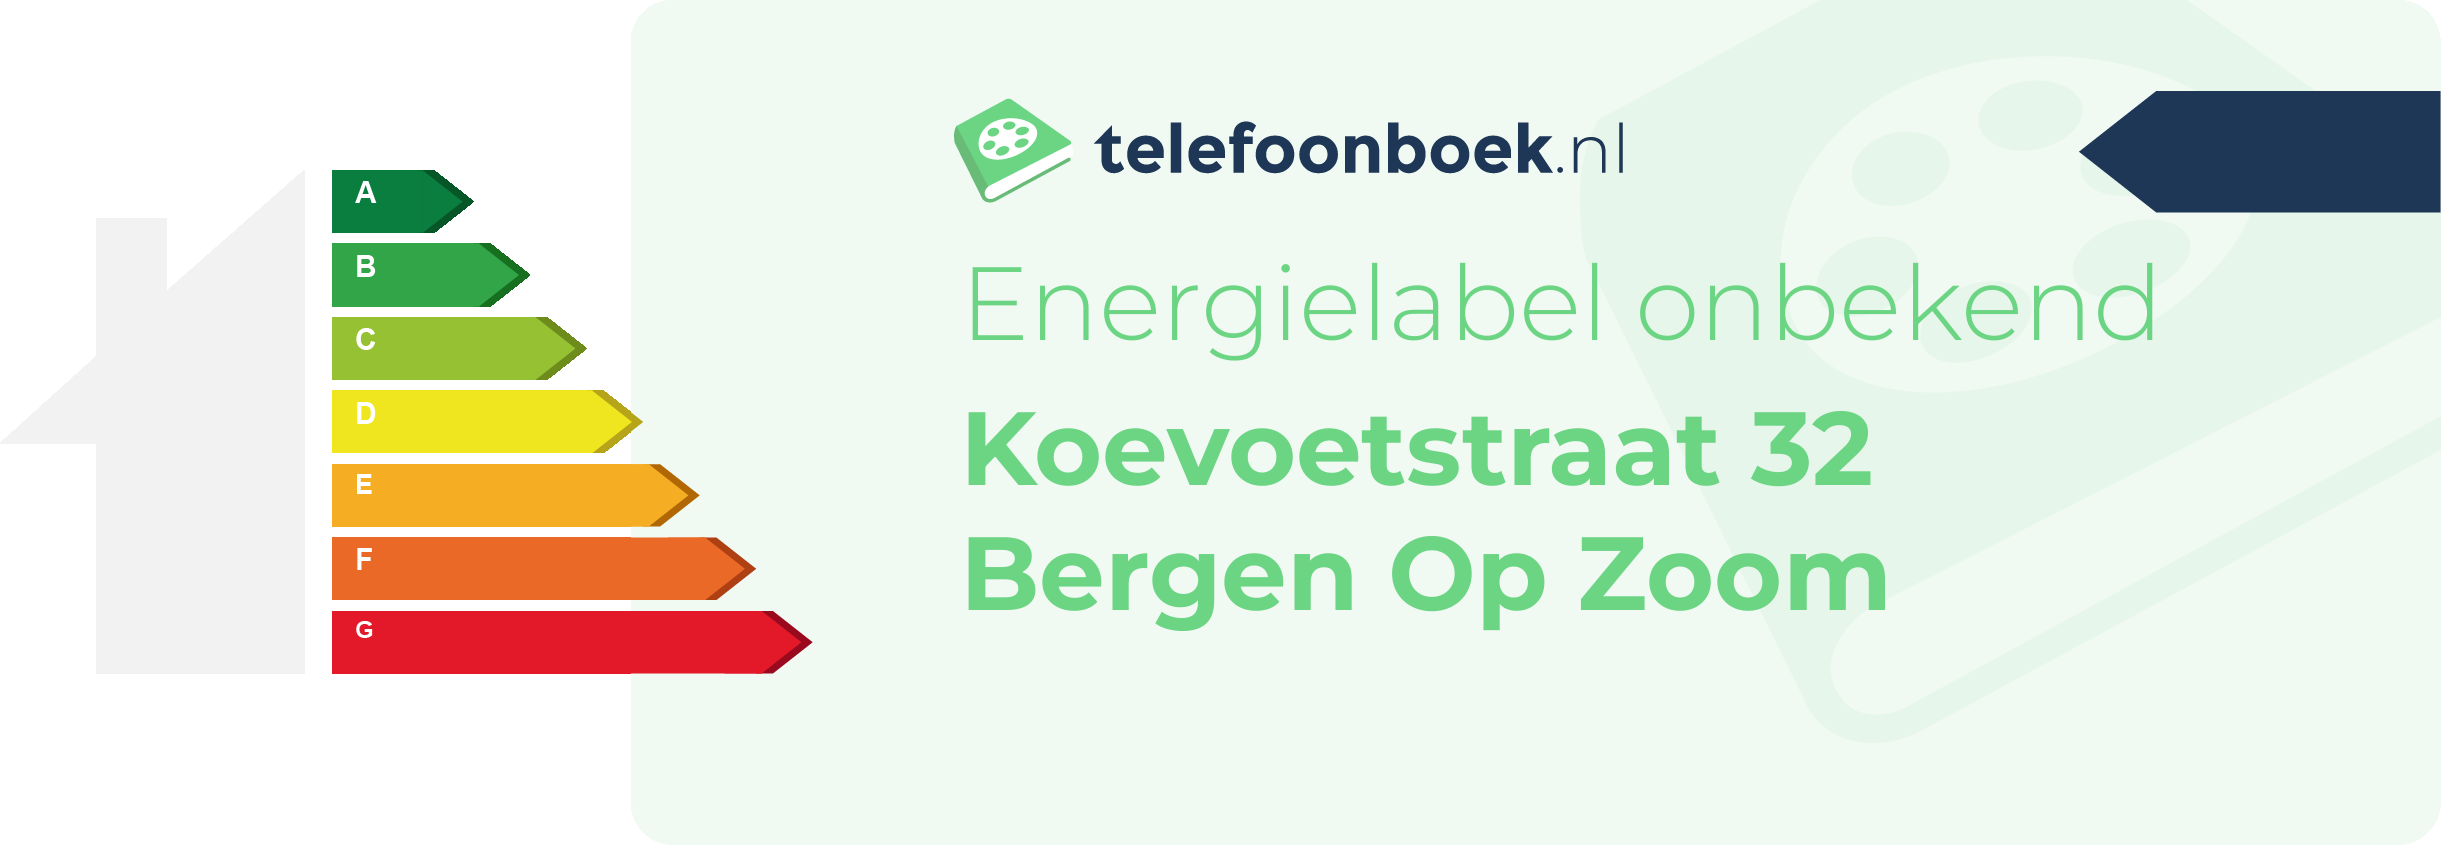 Energielabel Koevoetstraat 32 Bergen Op Zoom